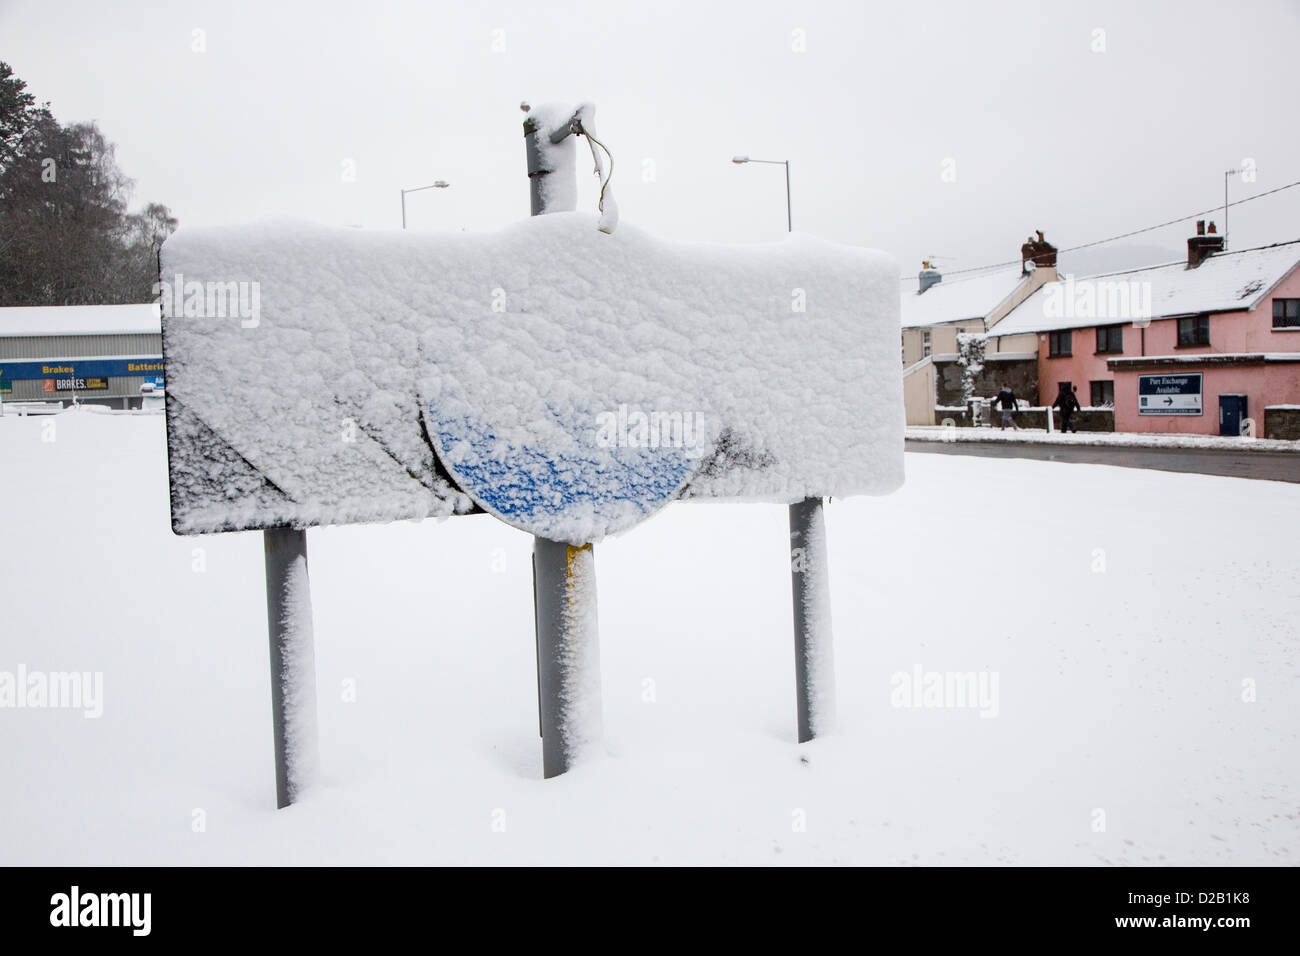 Mantenere la sinistra cartello stradale sulla rotonda ricoperta di neve, Abergavenny, Wales, Regno Unito Foto Stock